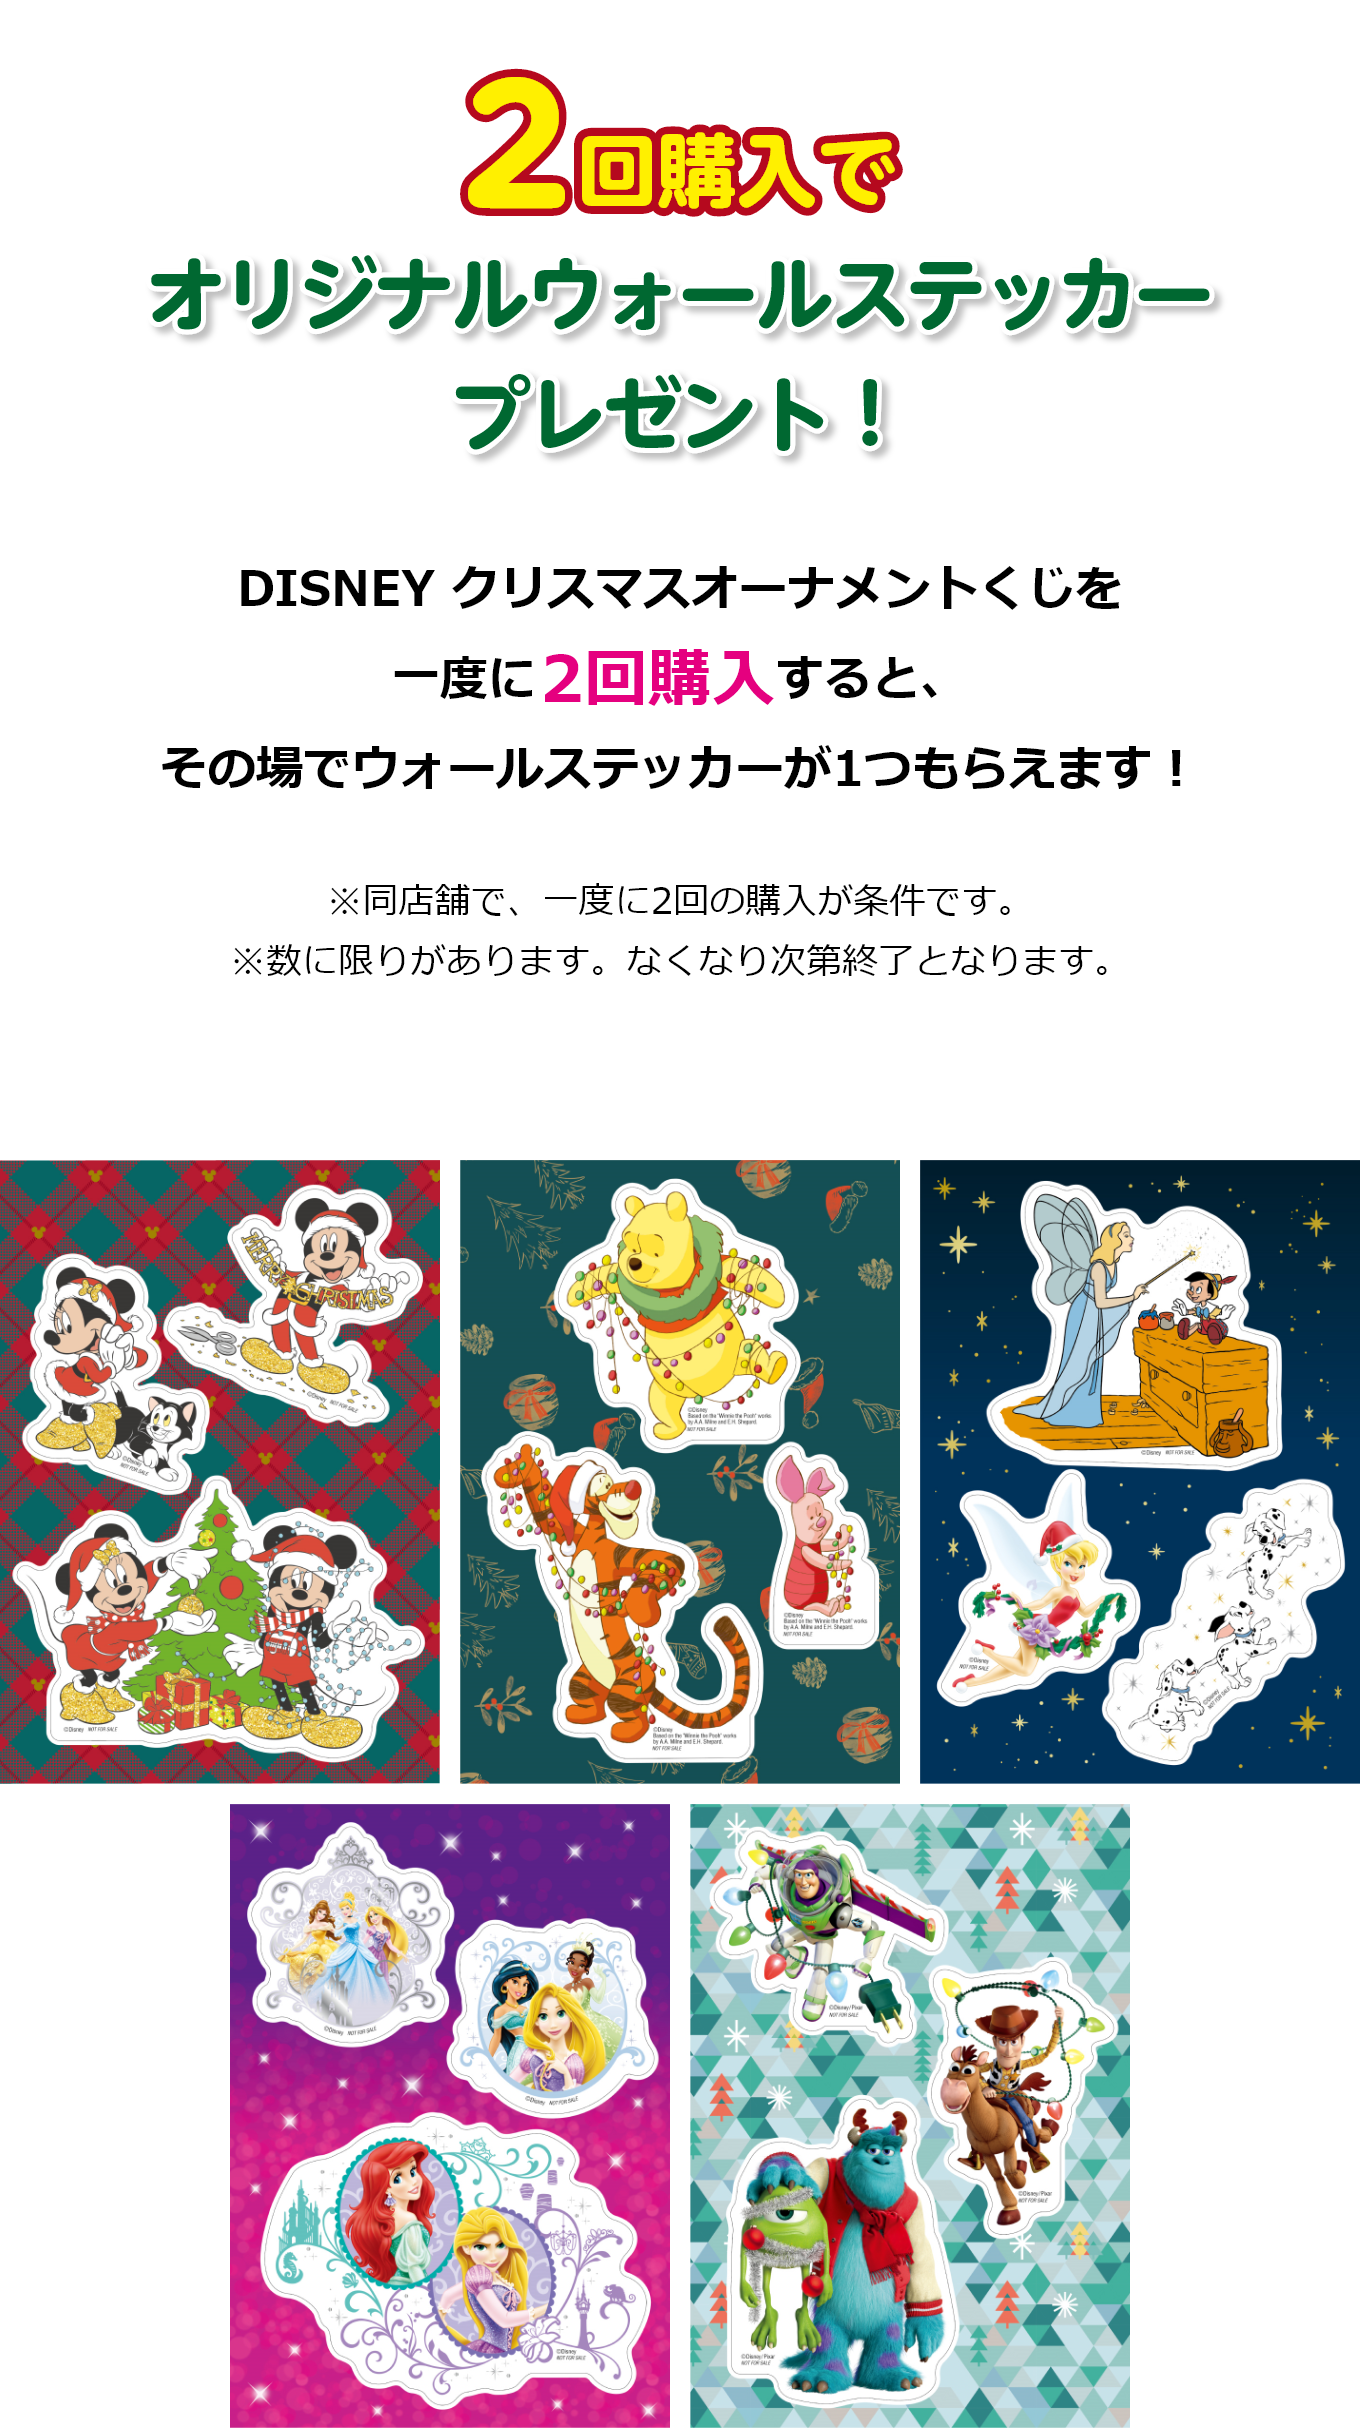 日本正規品 ディズニークリスマスオーナメントくじ キャラクターグッズ